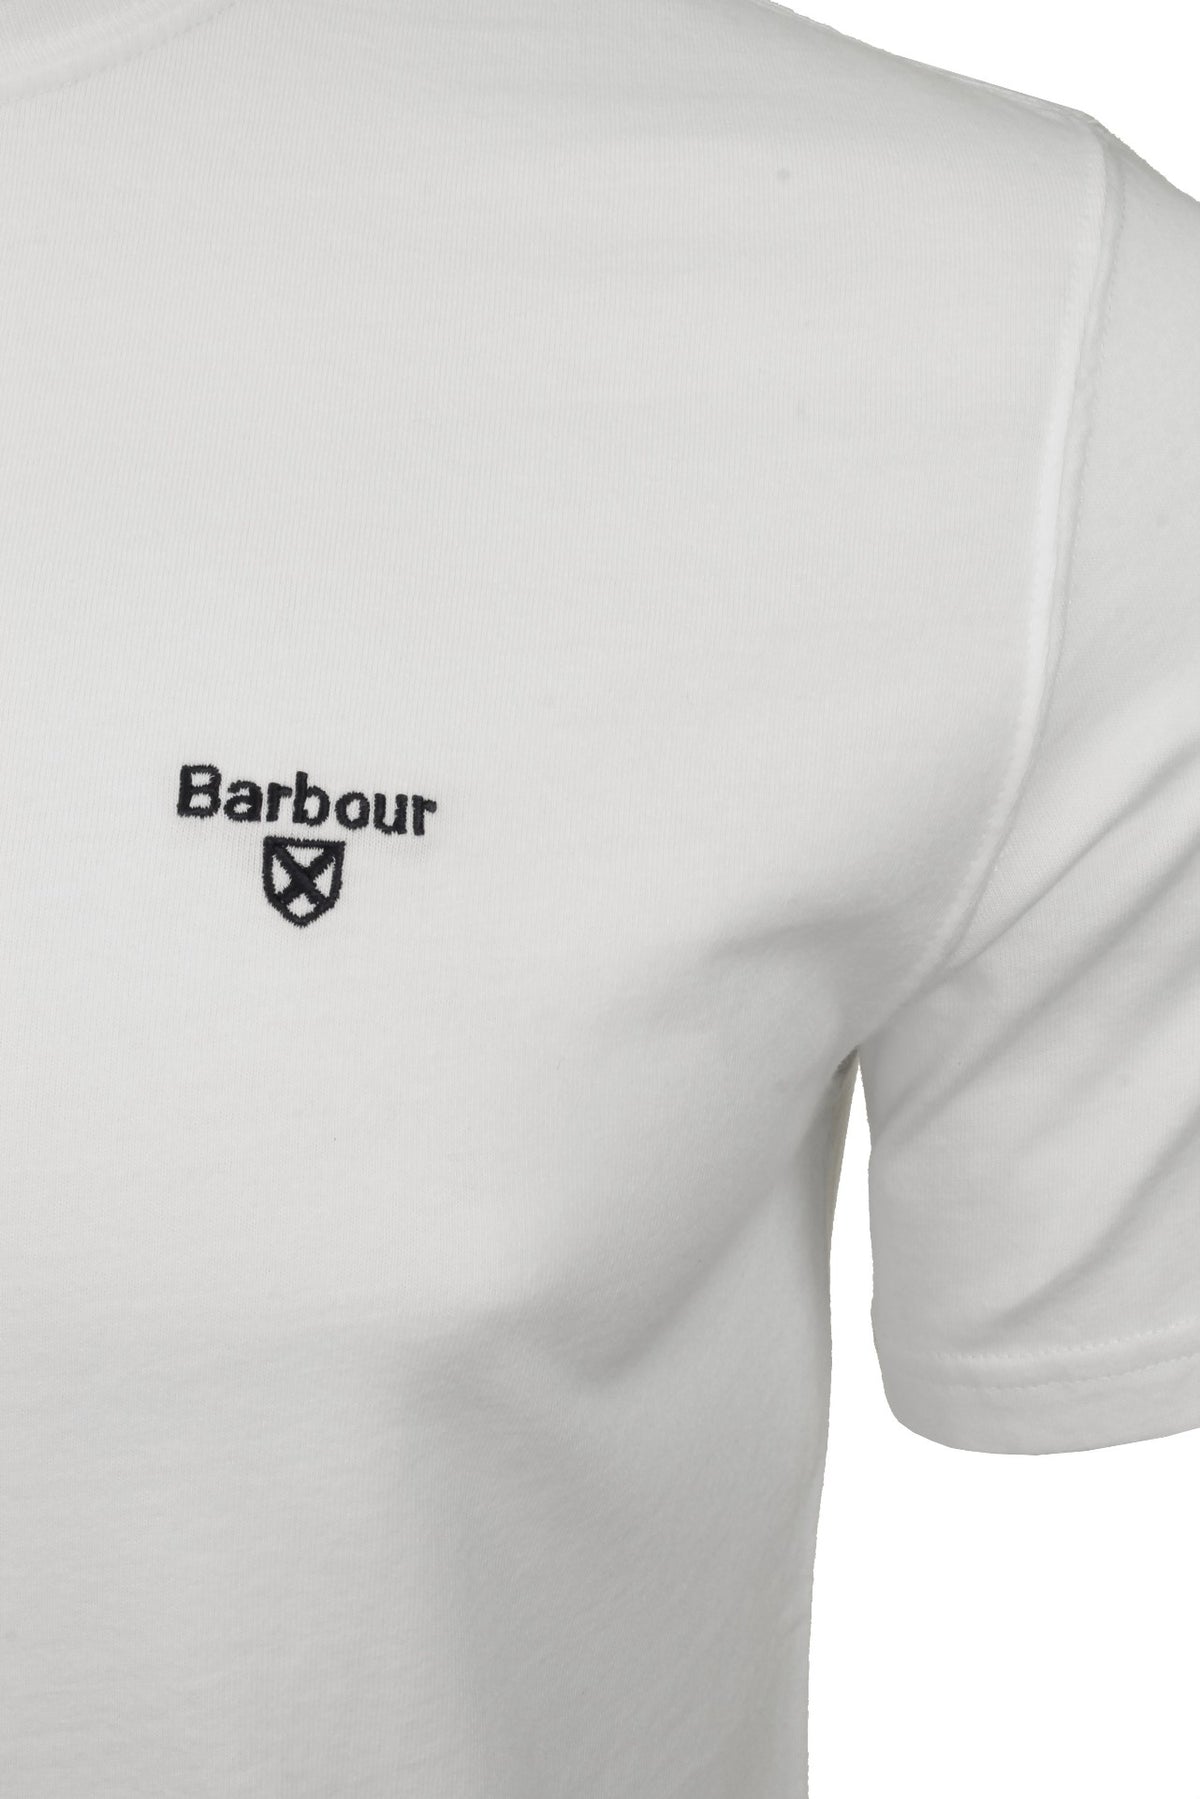 Barbour Men's Sports T-Shirt - Short Sleeved, 02, Mts0331, White